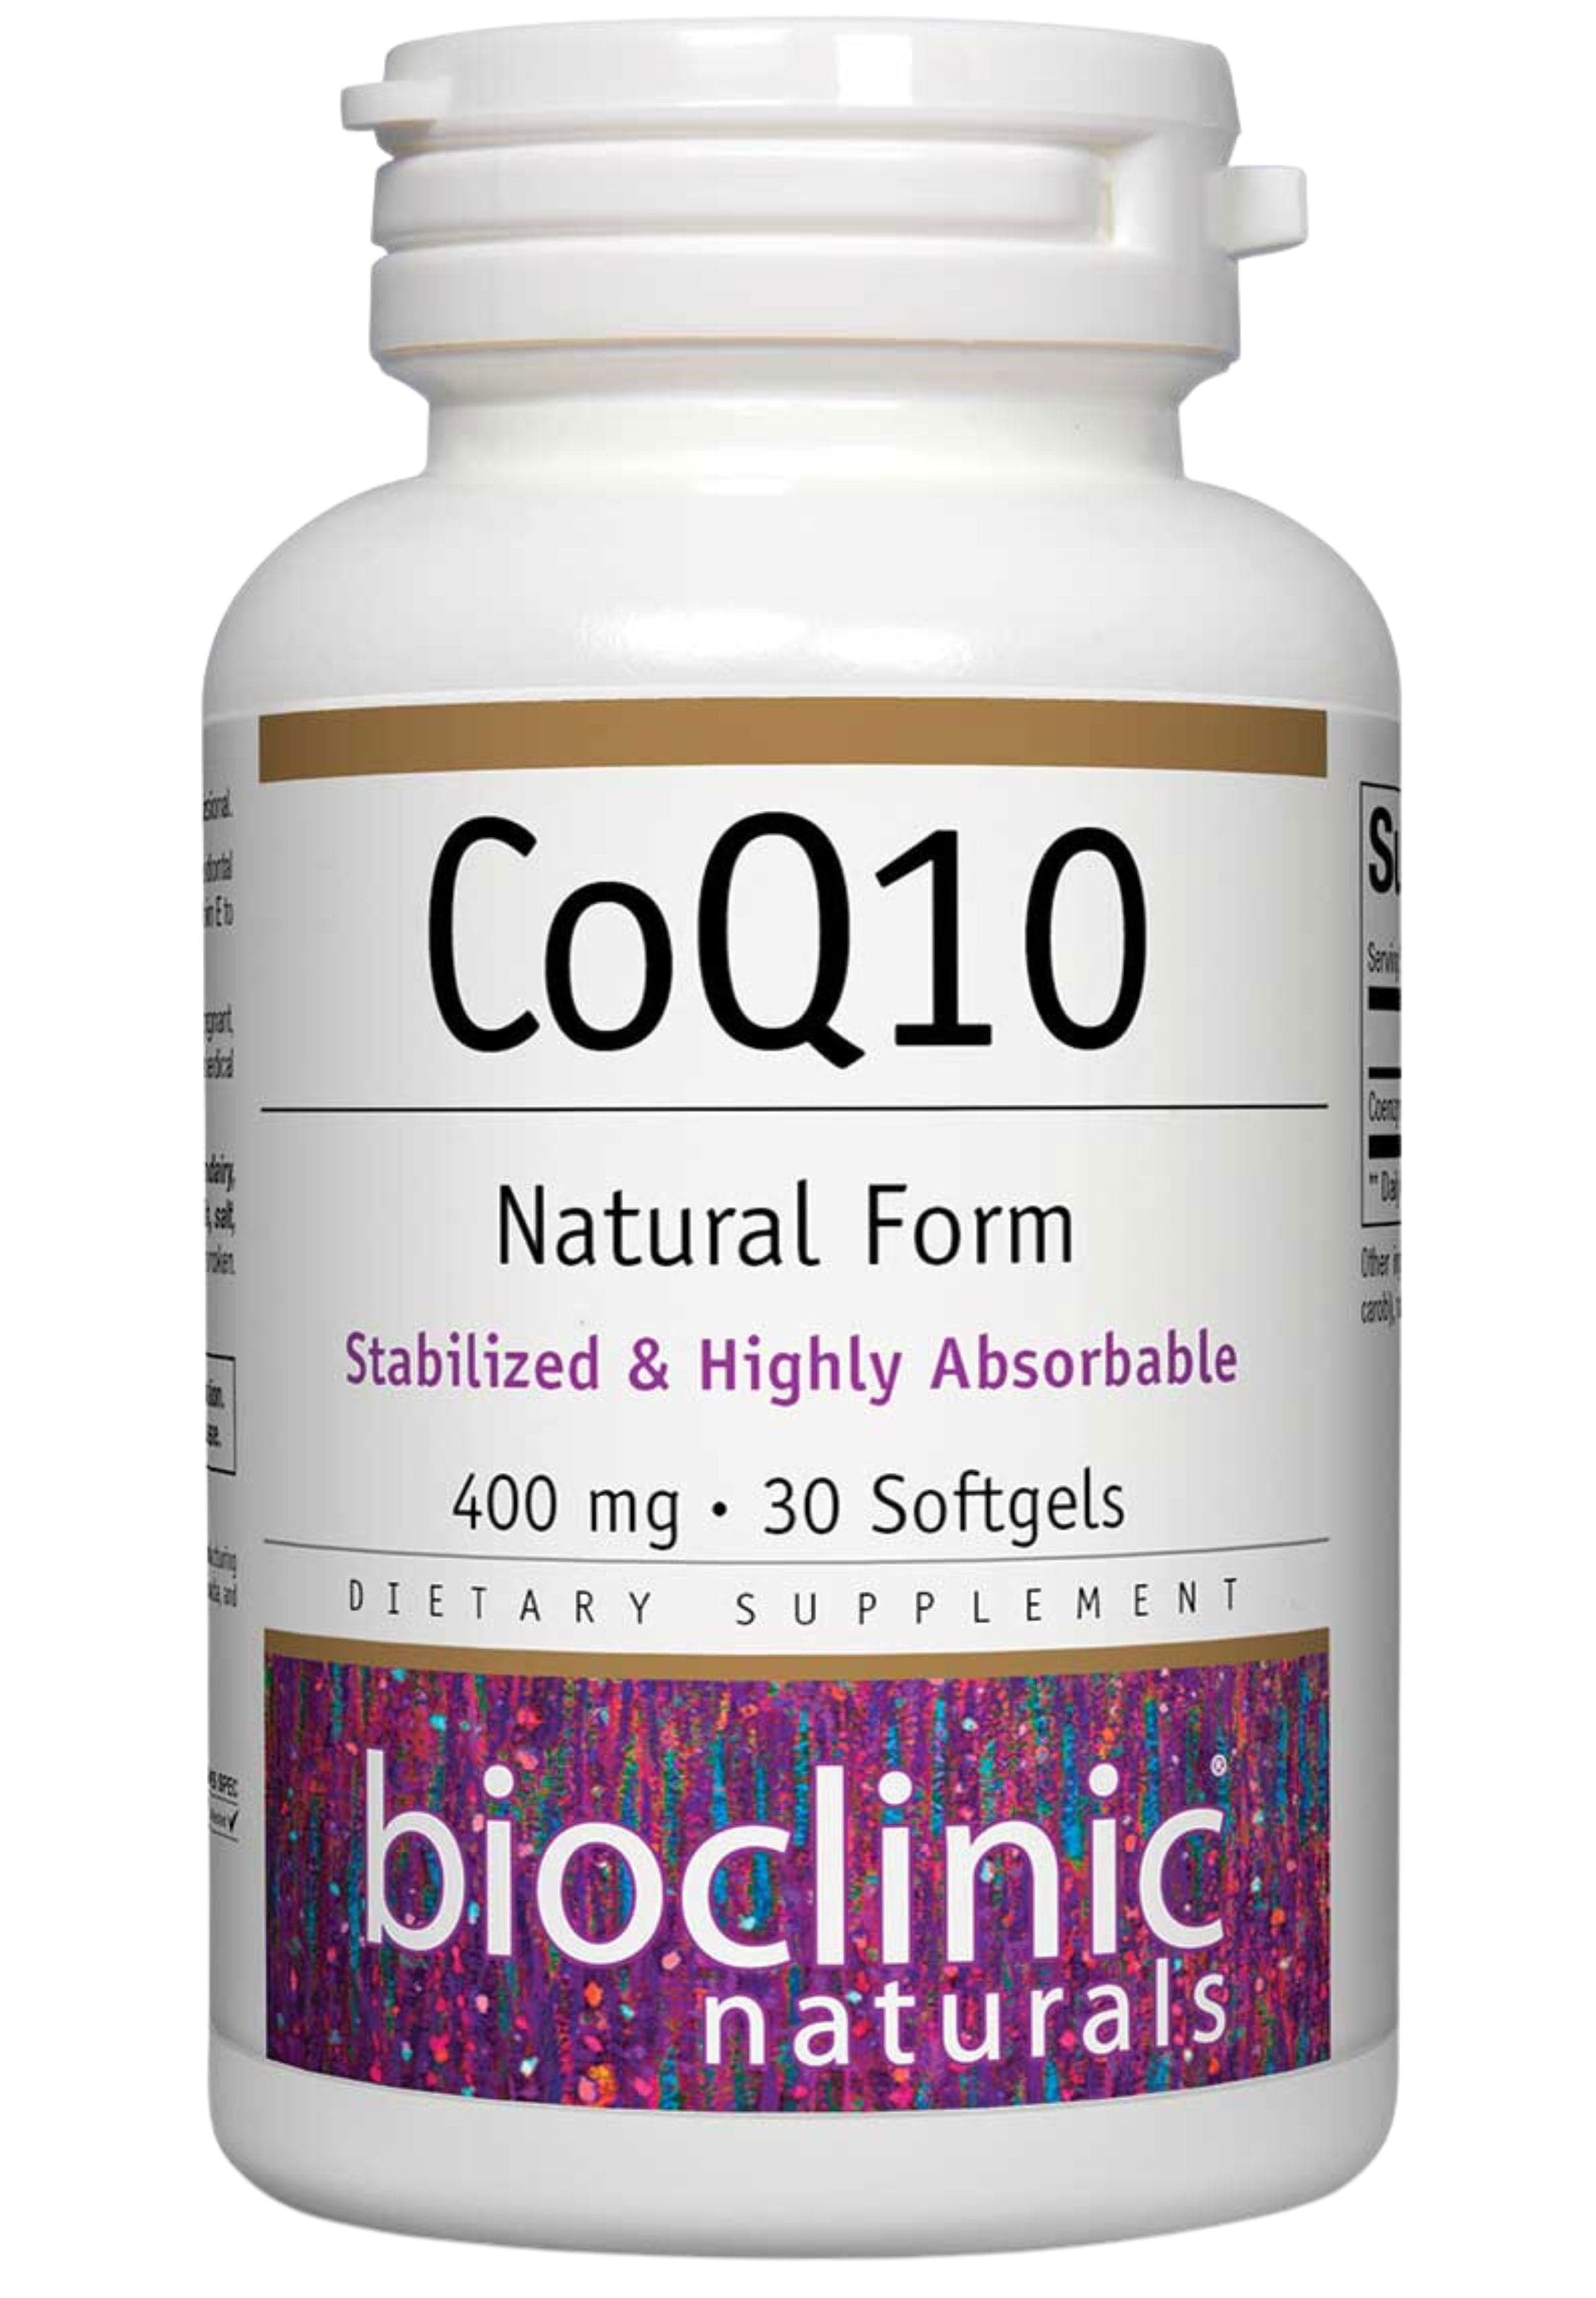 Bioclinic Naturals CoQ10 400mg